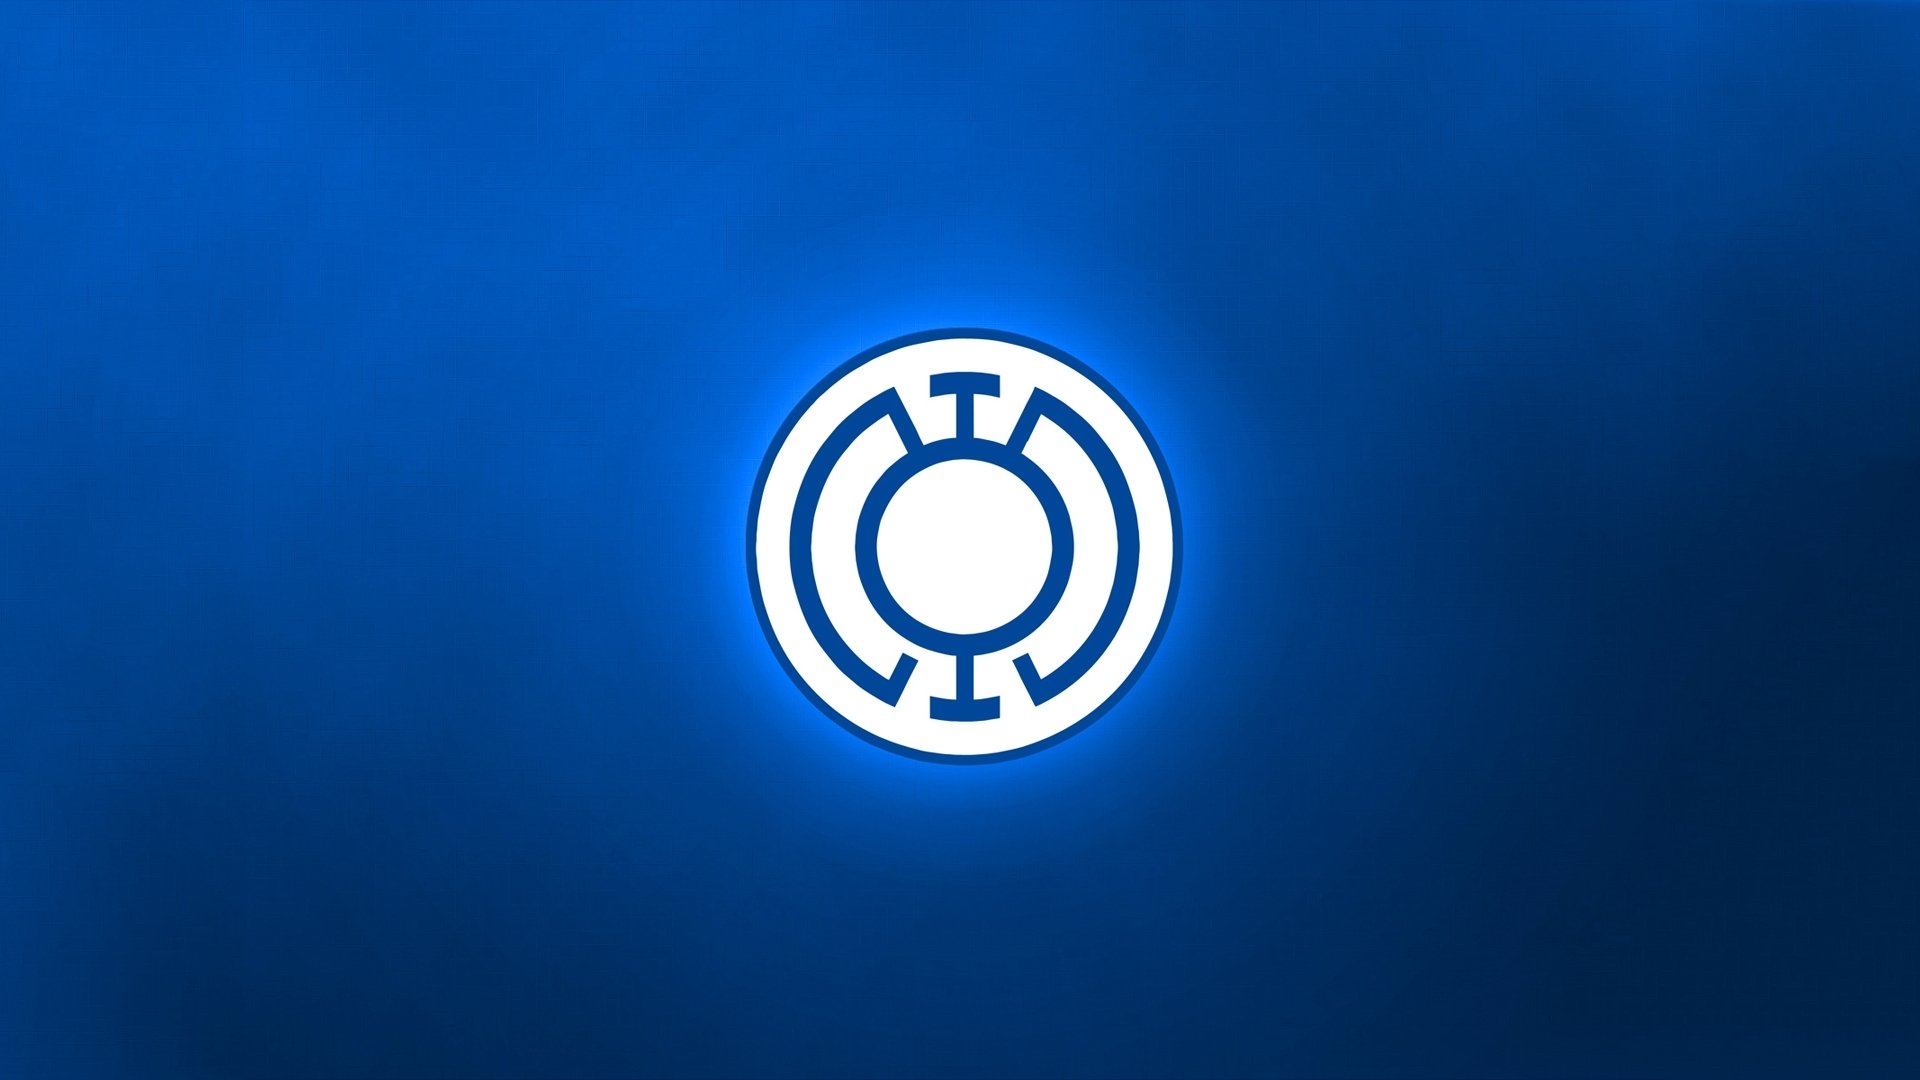 Blue Lantern Corps #8